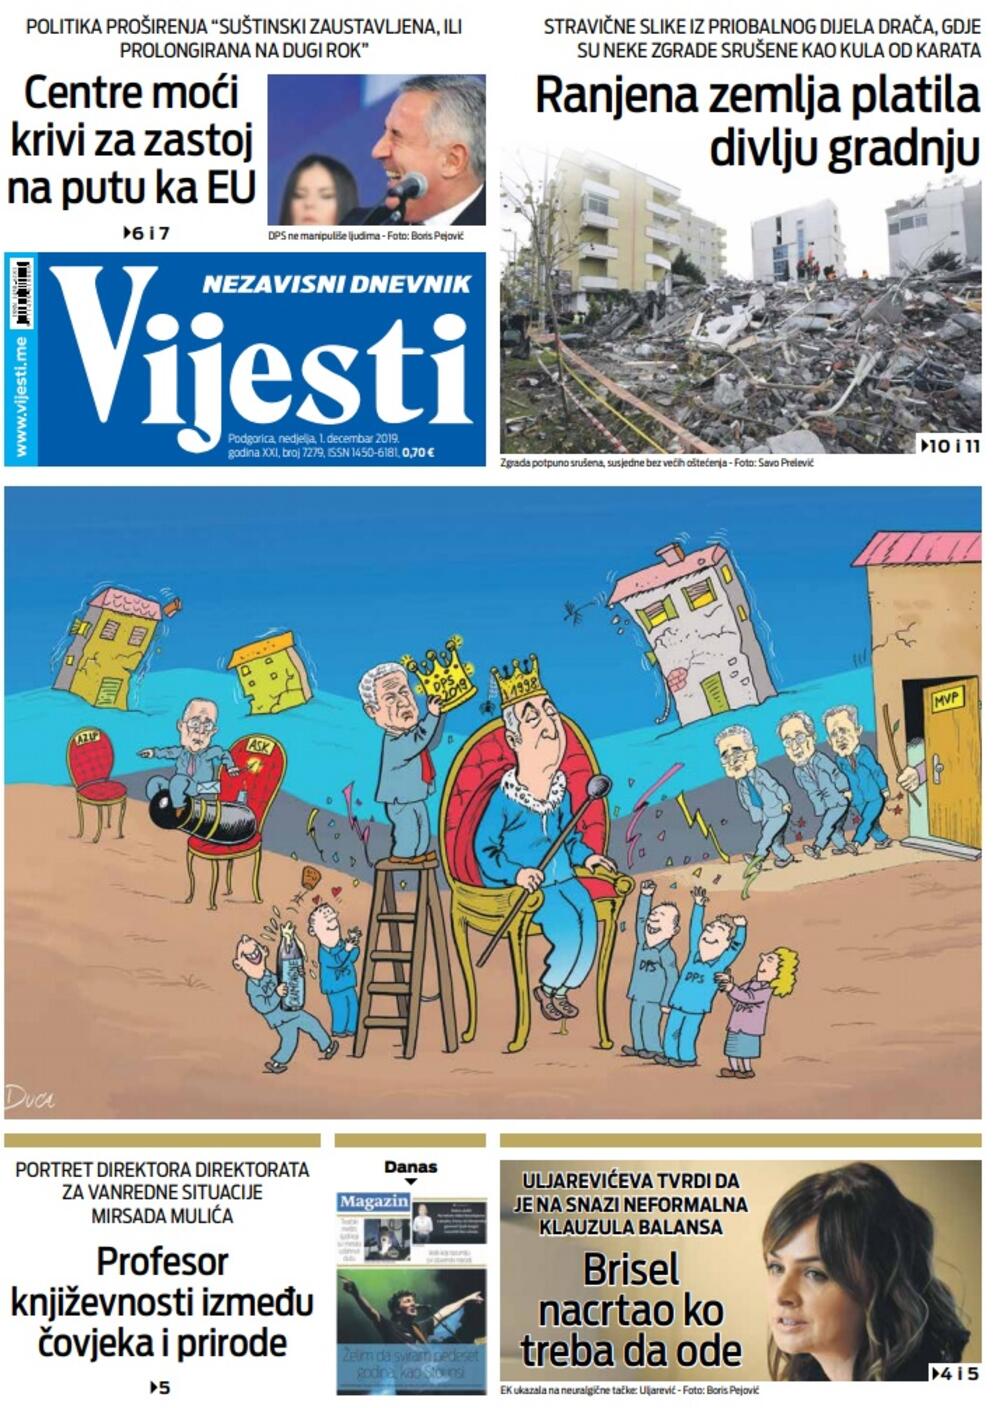 Naslovna strana "Vijesti" za 1. decembar 2019. godine, Foto: "Vijesti"